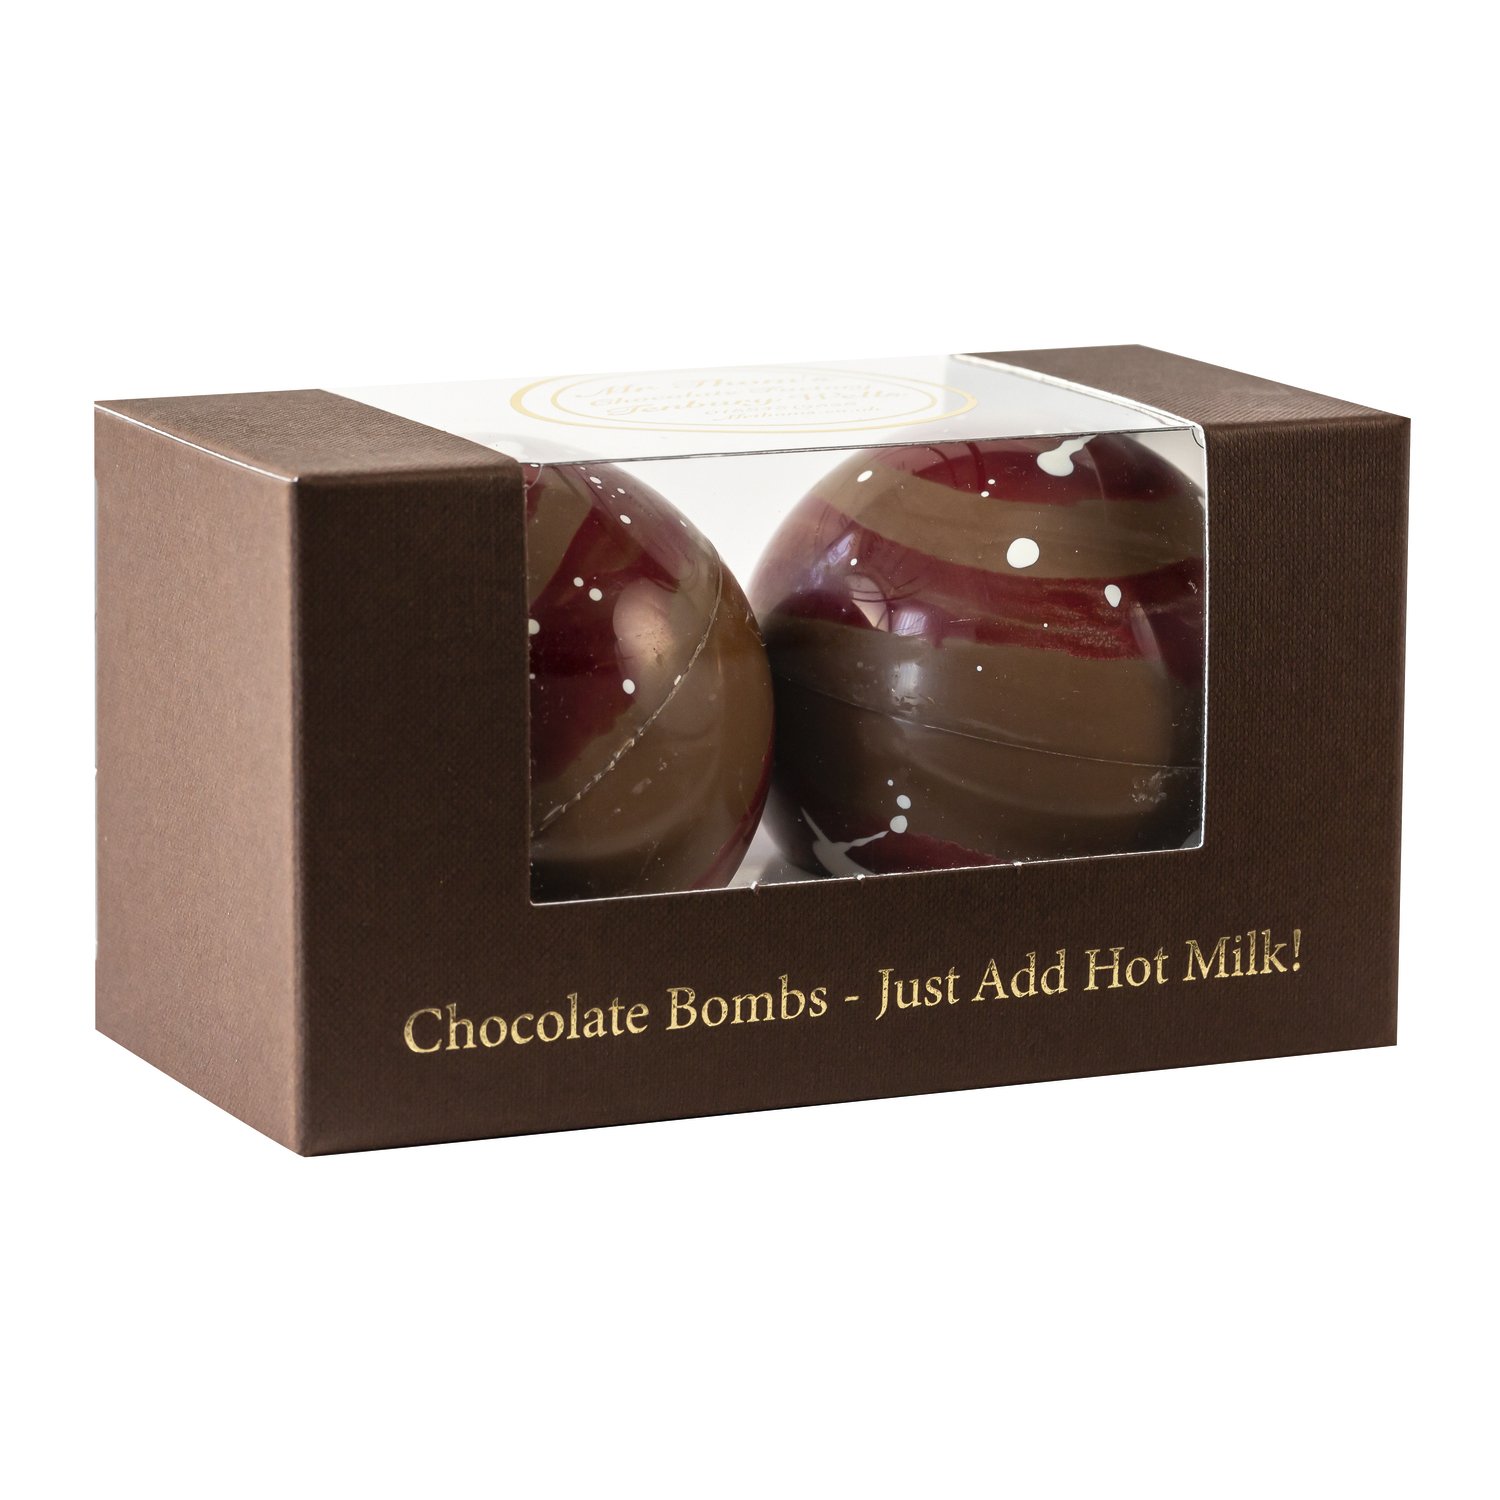 Mr Thom's duo milk chocolate bomb in gift box - VAT FREE - 6x160g